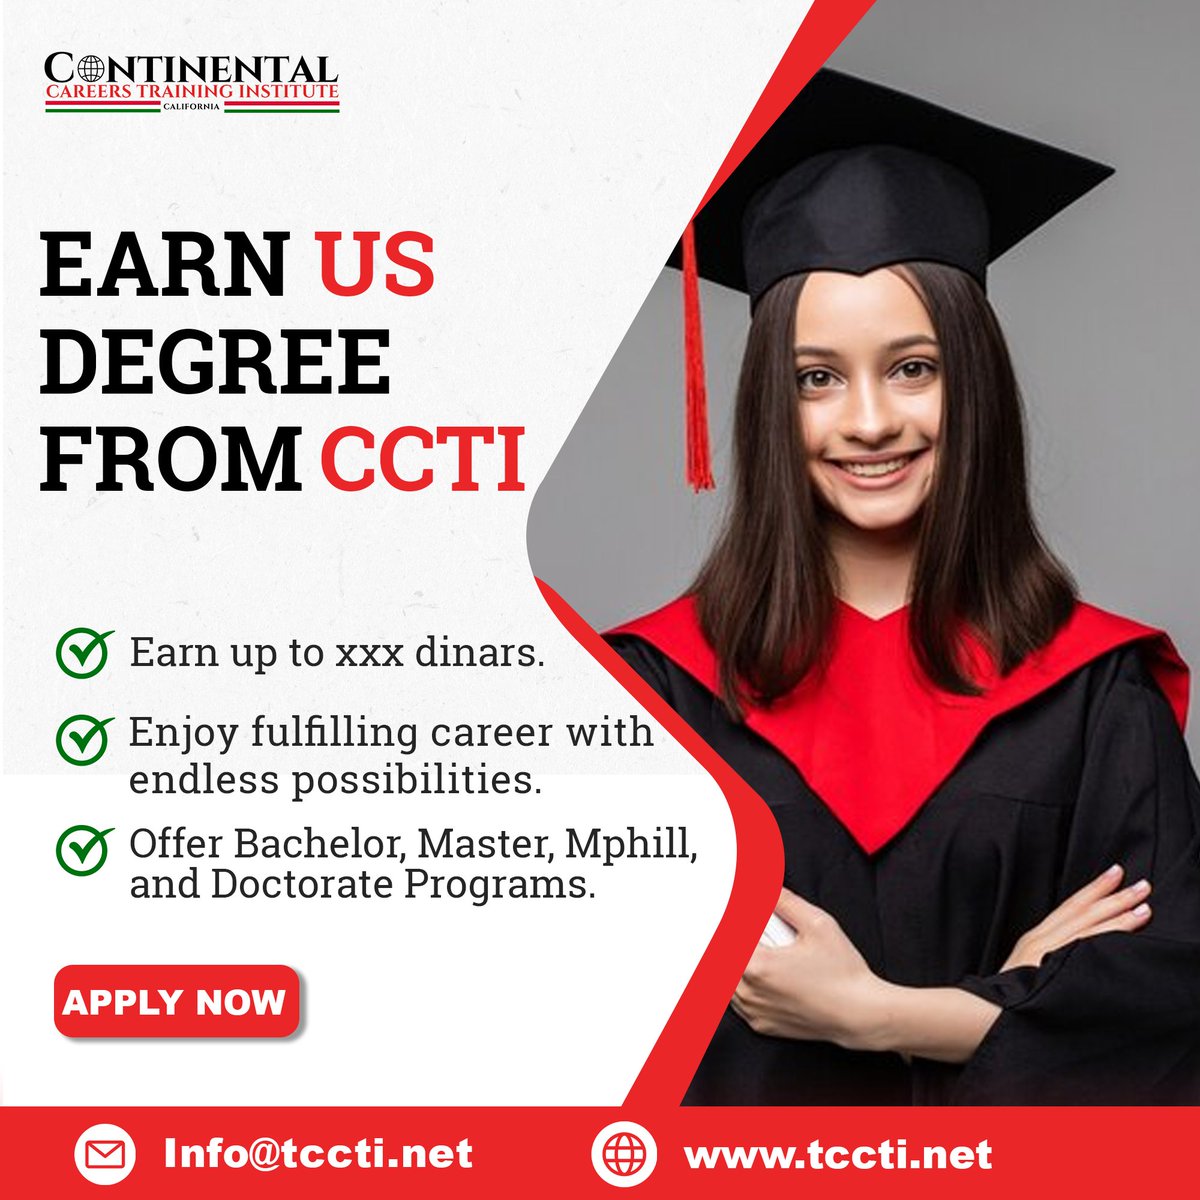 𝗖𝗼𝗺𝗽𝗹𝗲𝘁𝗲 𝘆𝗼𝘂𝗿 𝗱𝗲𝗴𝗿𝗲𝗲 𝗳𝗿𝗼𝗺 𝗖𝗼𝗻𝘁𝗶𝗻𝗲𝗻𝘁𝗮𝗹 𝗖𝗮𝗿𝗲𝗲𝗿𝘀 𝗧𝗿𝗮𝗶𝗻𝗶𝗻𝗴 𝗜𝗻𝘀𝘁𝗶𝘁𝘂𝘁𝗲 𝗮𝗻𝗱 𝗴𝗲𝘁 𝗮 𝗨𝗦 𝗱𝗲𝗴𝗿𝗲𝗲!
#CCTI #HigherEducation #InternationalDegree #CareerGrowth #BetterFuture #CareerGrowth #EducationPartner #CCTI #Career